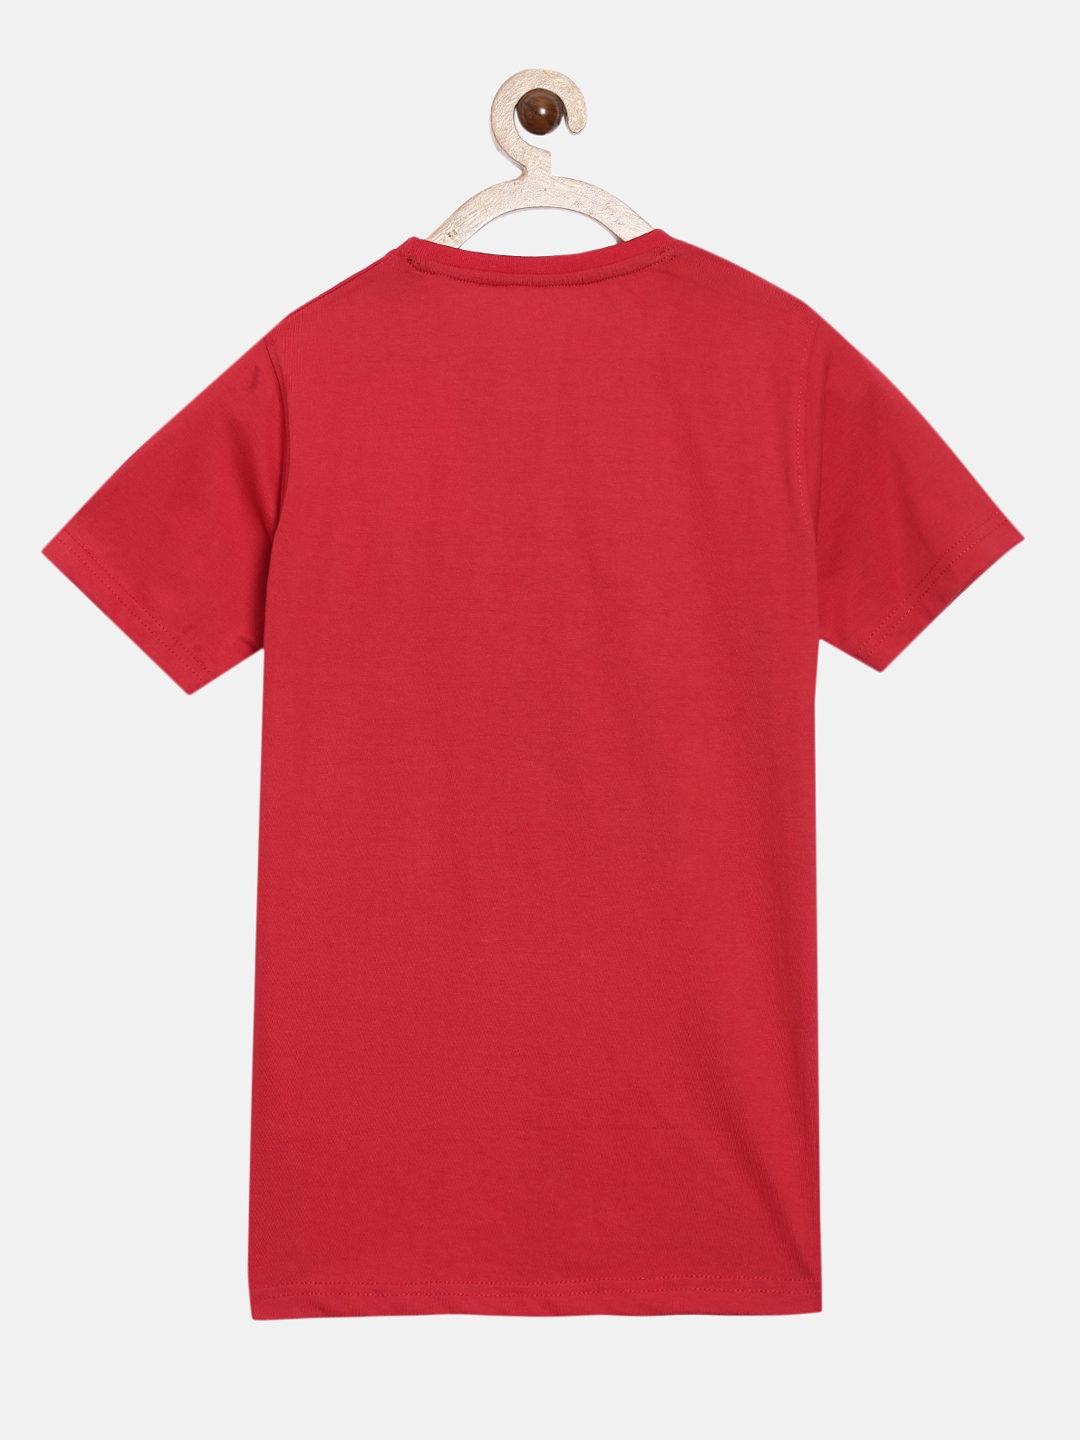 Peejas | Peejas 100% Cotton Boys  Printed Round Neck Short Sleeves Tshirts 5